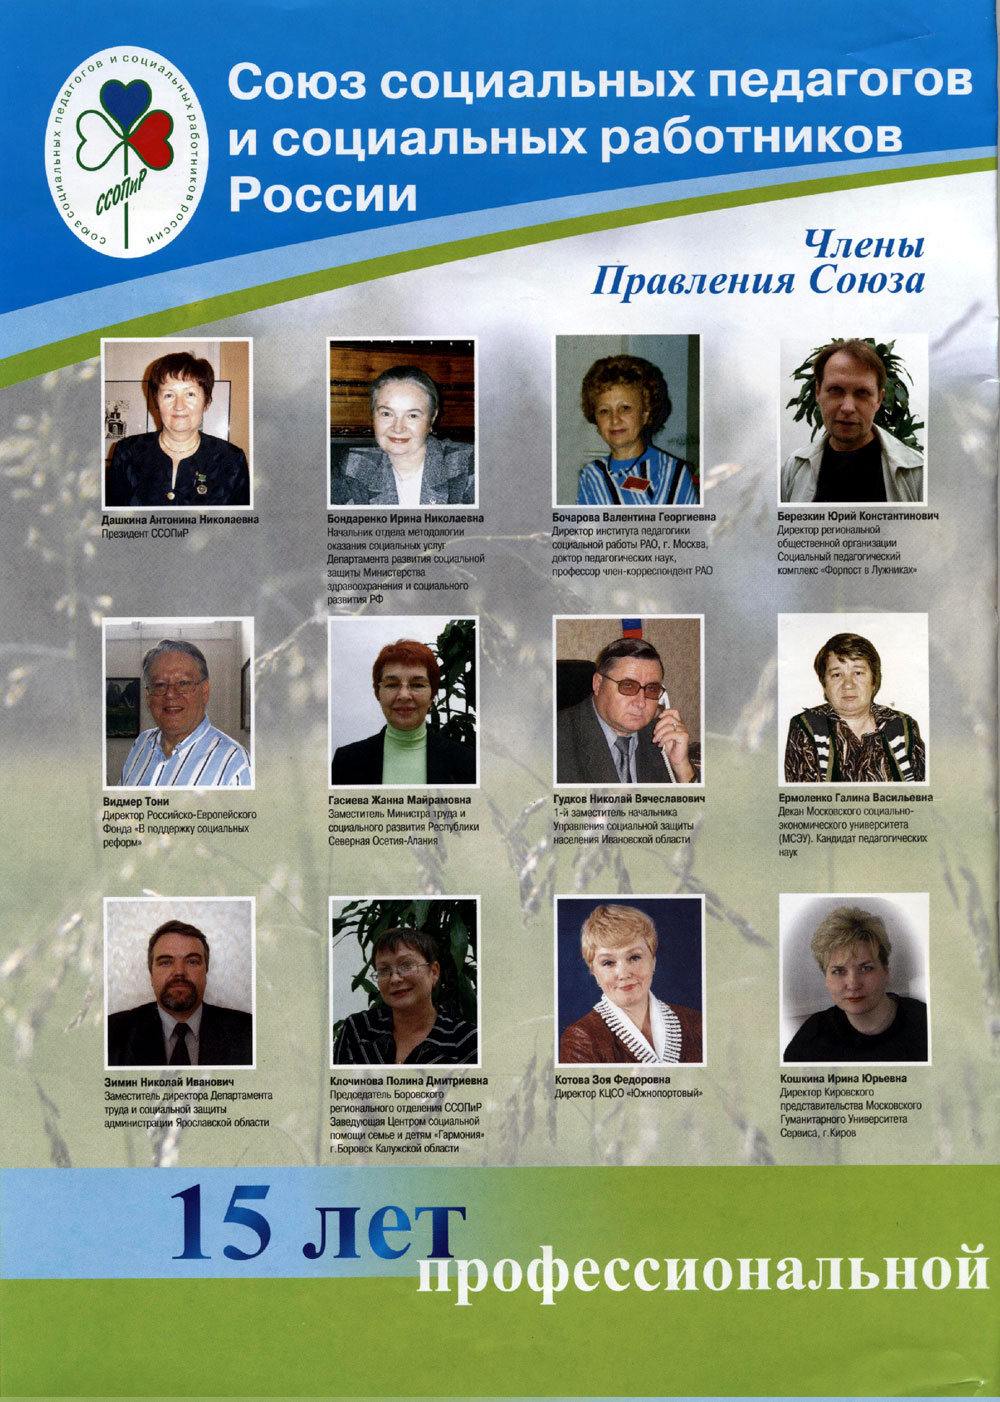 Ассоциации социальных педагогов и социальных работников России